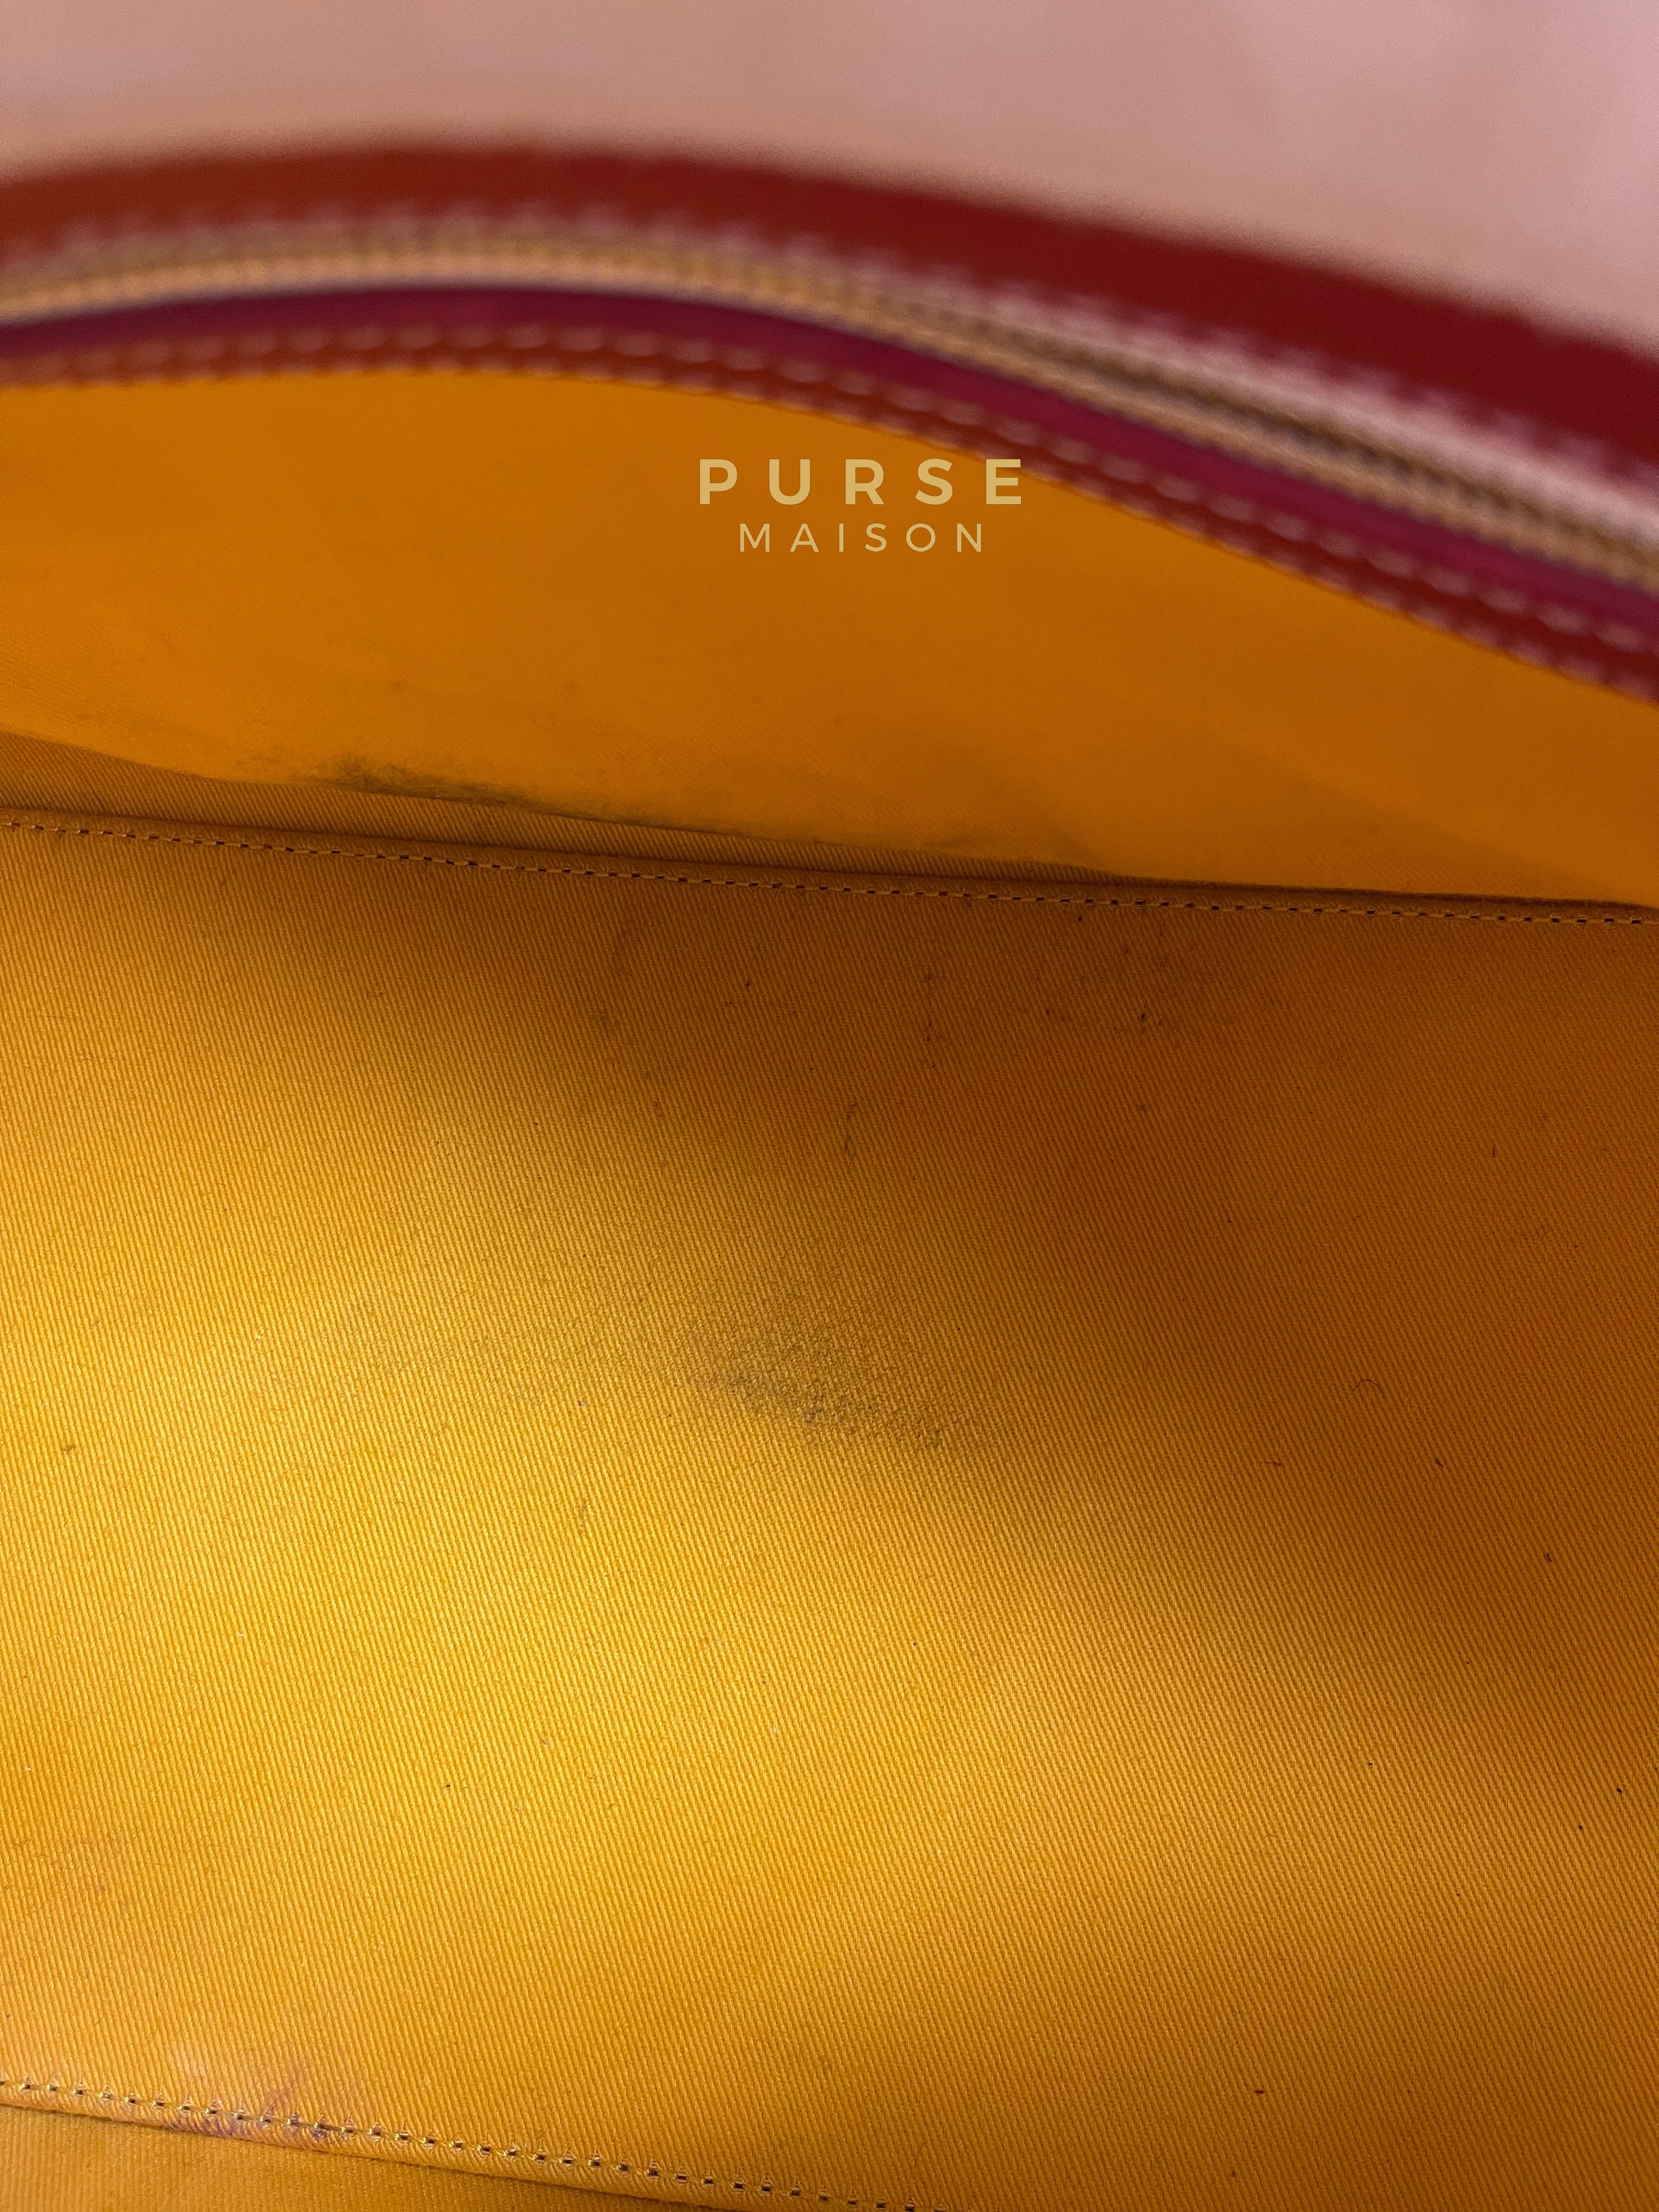 Goyard Croisiere 35 Coated Canvas Rouge | Purse Maison Luxury Bags Shop